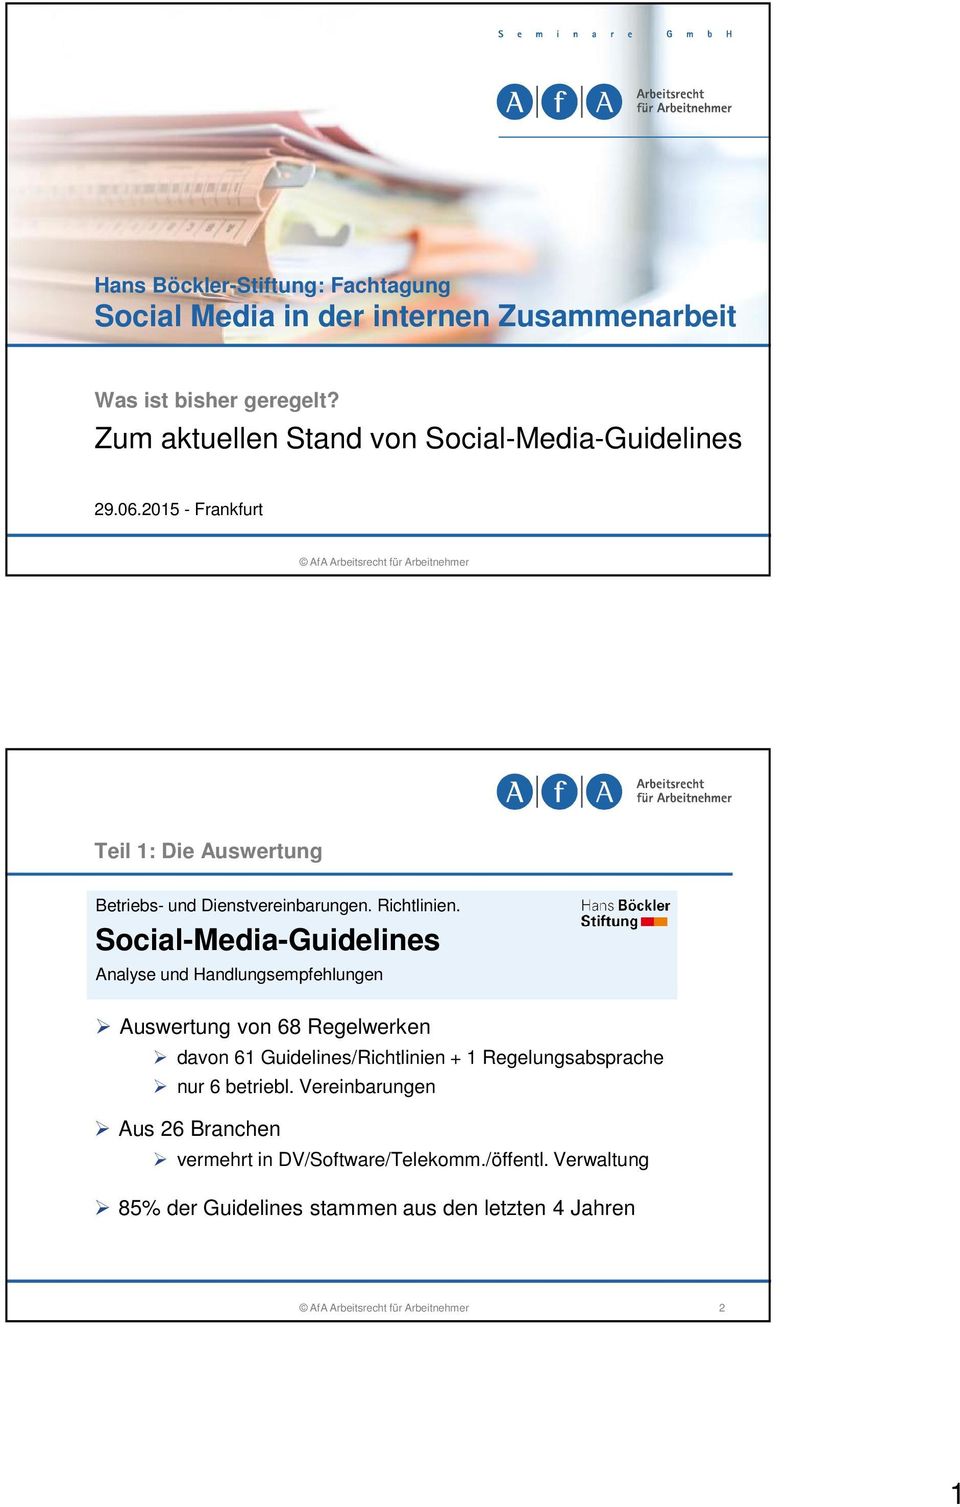 Social-Media-Guidelines Analyse und Handlungsempfehlungen Auswertung von 68 Regelwerken davon 61 Guidelines/Richtlinien + 1 Regelungsabsprache nur 6